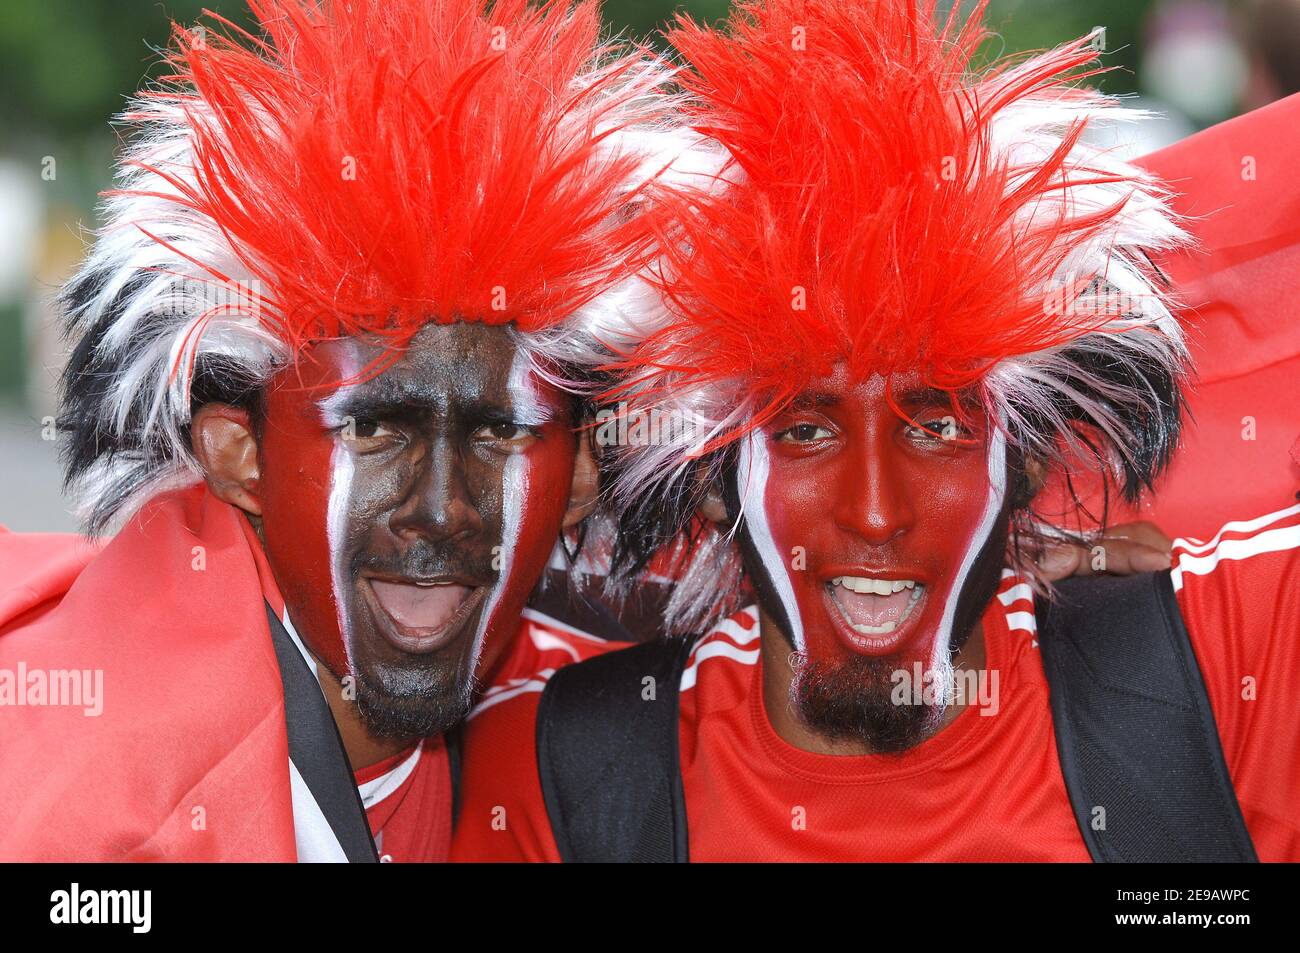 Trinidad und Tobagos Fans vor der WM 2006, Gruppe B, England gegen Trinidad und Tobago Spiel in Nürnberg, Deutschland am 15. Juni 2006. Foto von Gouhier-Hahn-Orban/Cameleon/ABACAPRESS.COM Stockfoto